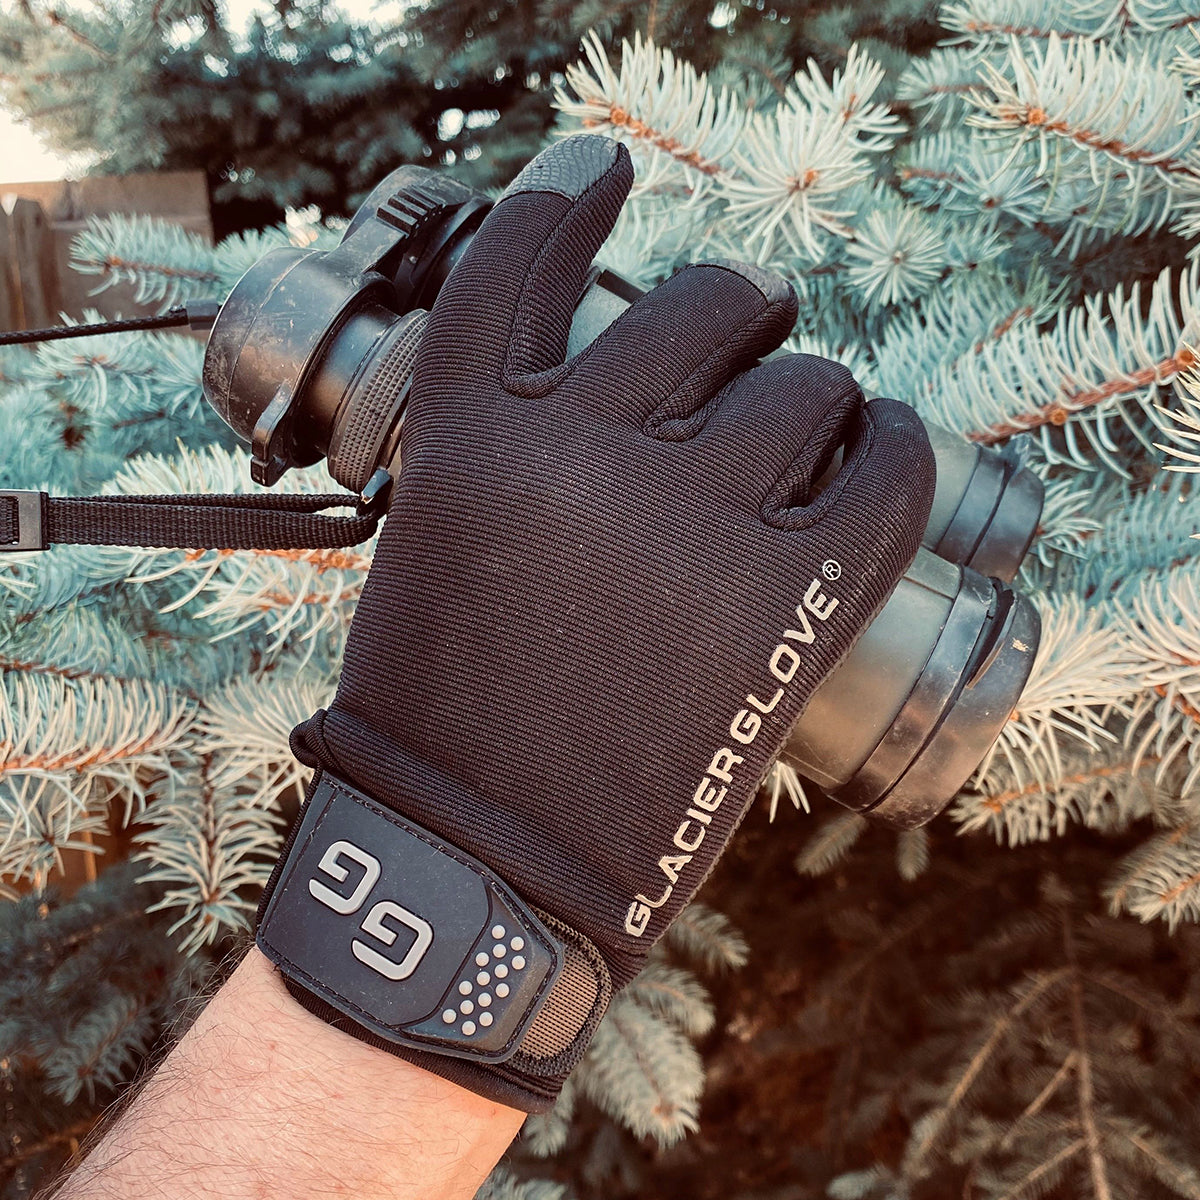 Glacier Glove Elite Tactical Full Finger Gloves - Black Glacier Glove